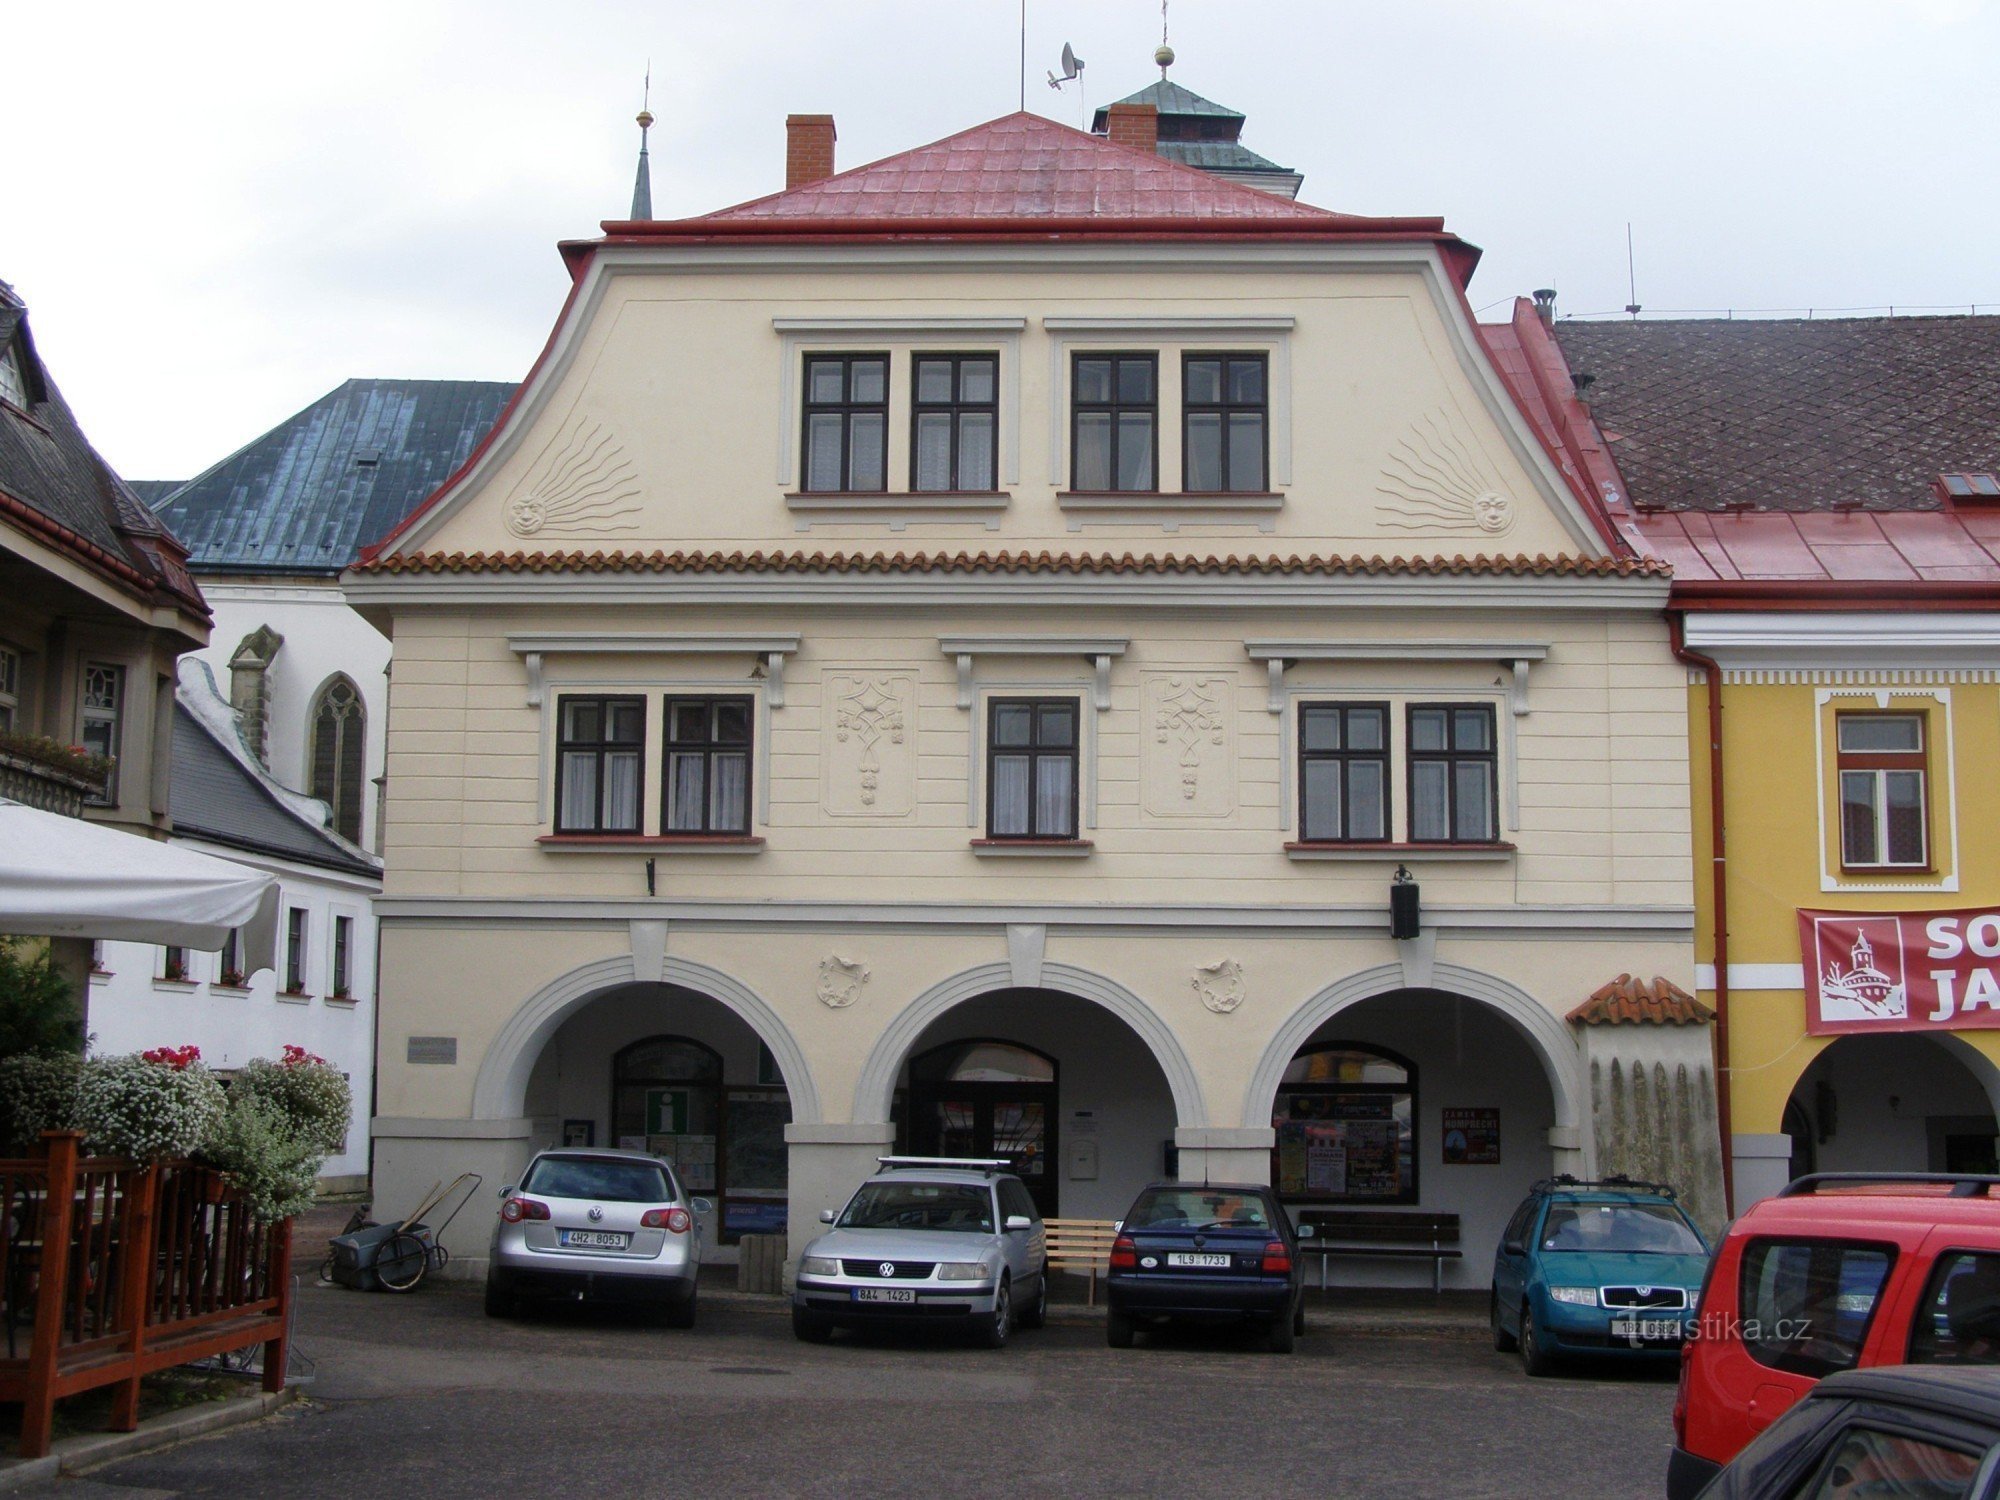 Sobota - centrum informacyjne